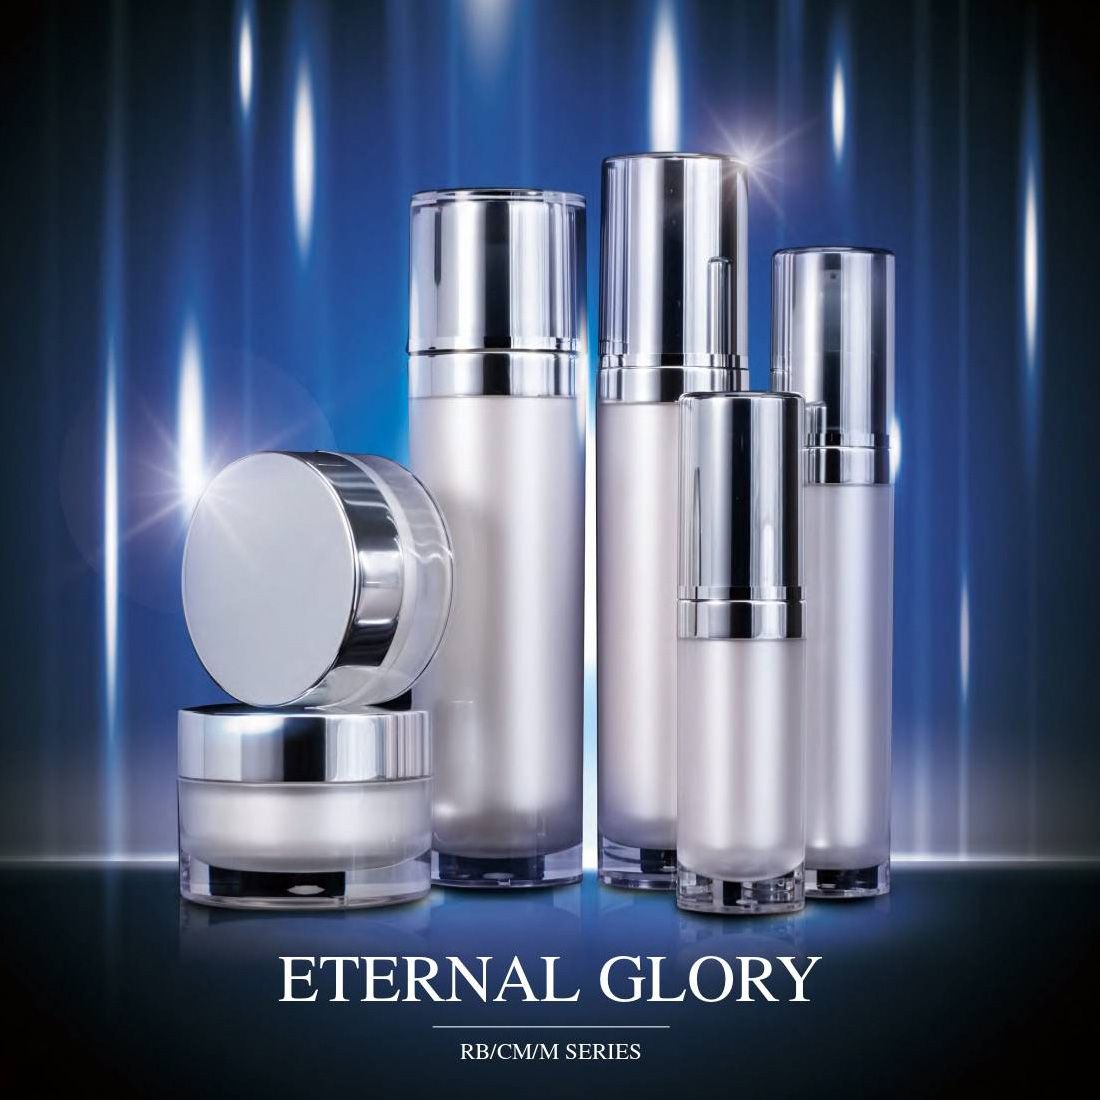 Eternal Glory (บรรจุภัณฑ์เครื่องสำอางและผลิตภัณฑ์บำรุงผิวอะคริลิกหรูหรา) ซีรี่ส์ RB / CM / M